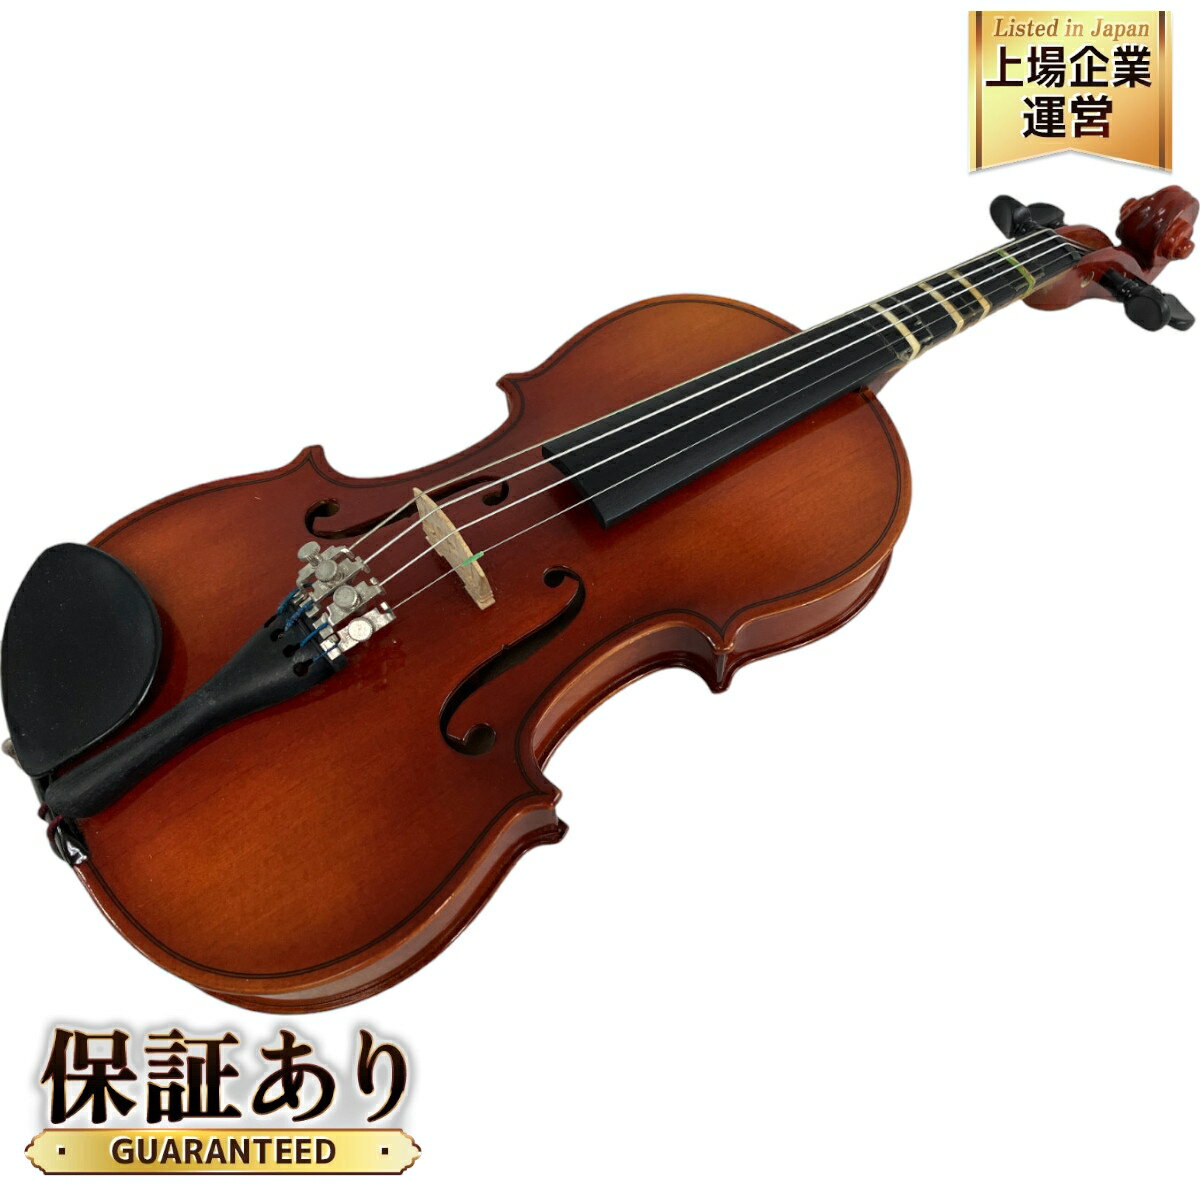 【中古】 【動作保証】SUZUKI No.200 1/8 Anno 2005 ケース 弓付き バイオリン スズキ 楽器 中古 N8917010